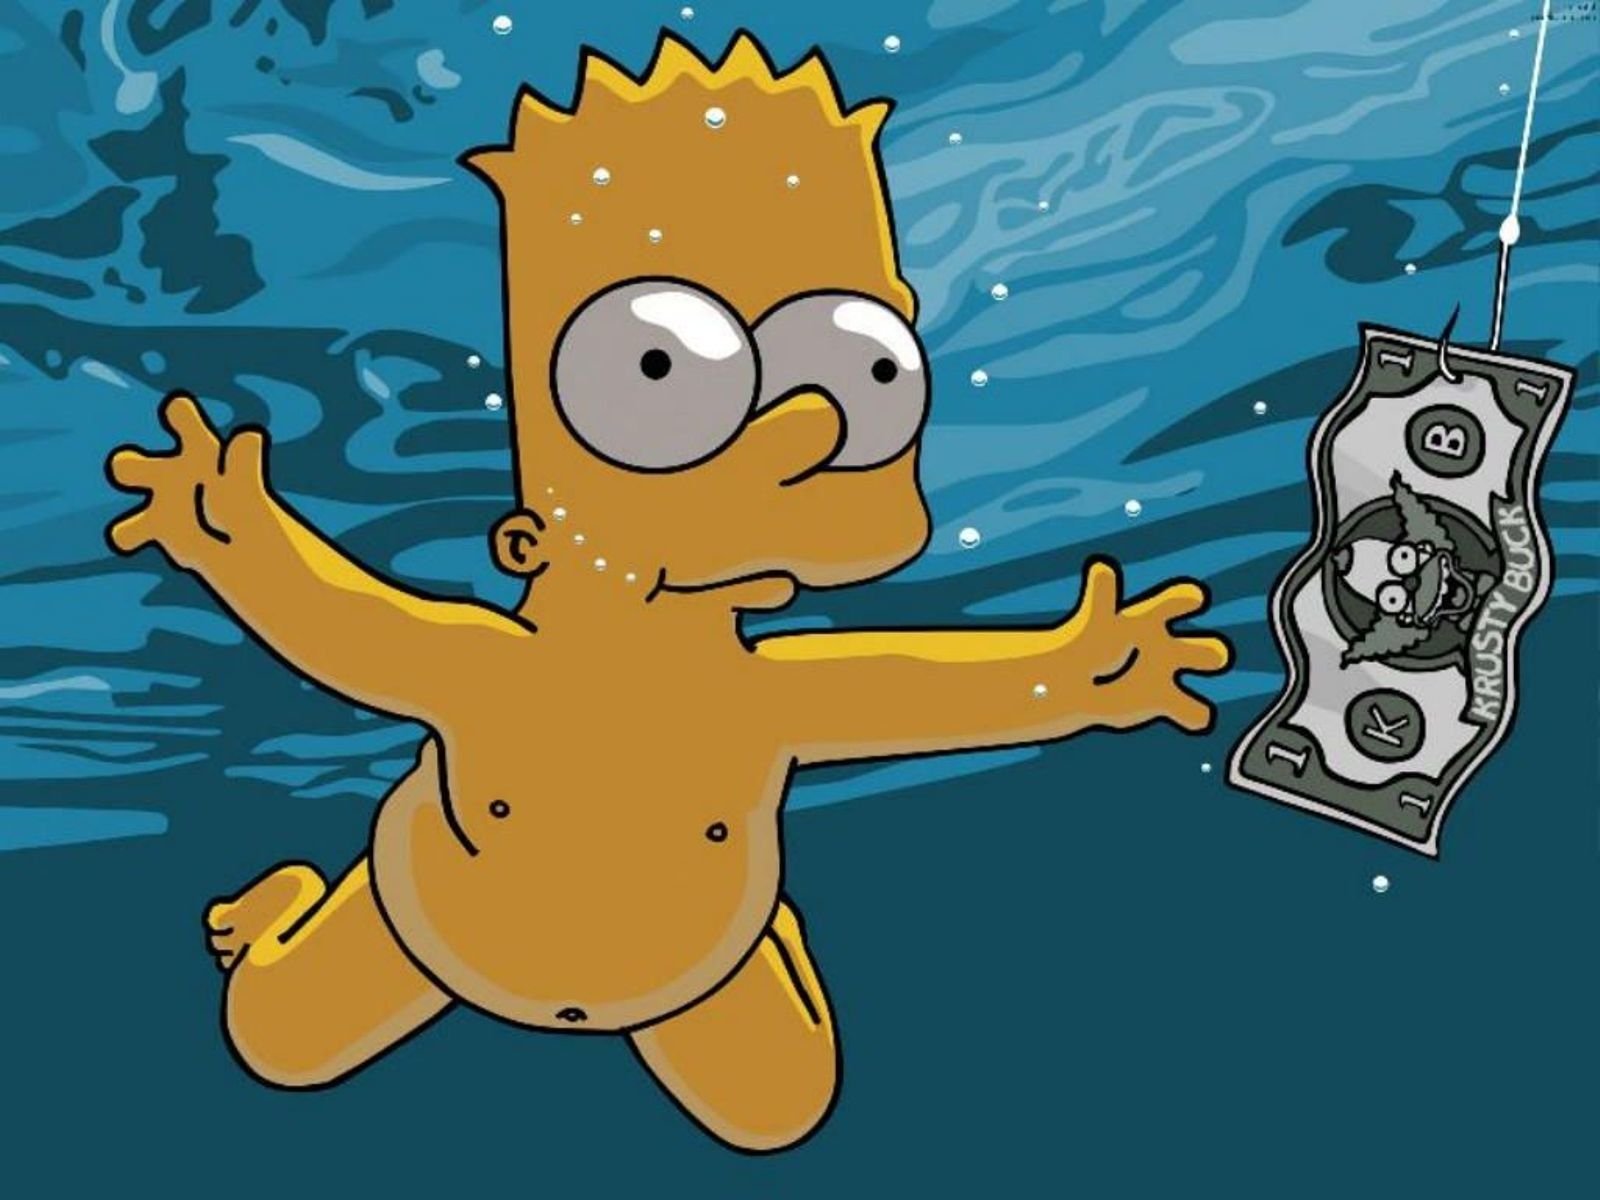 Istruzioni per l’uso: se nella vita vuoi passare dall’essere Bart Simpson a diventare uno degli ultimi zar leggi qui